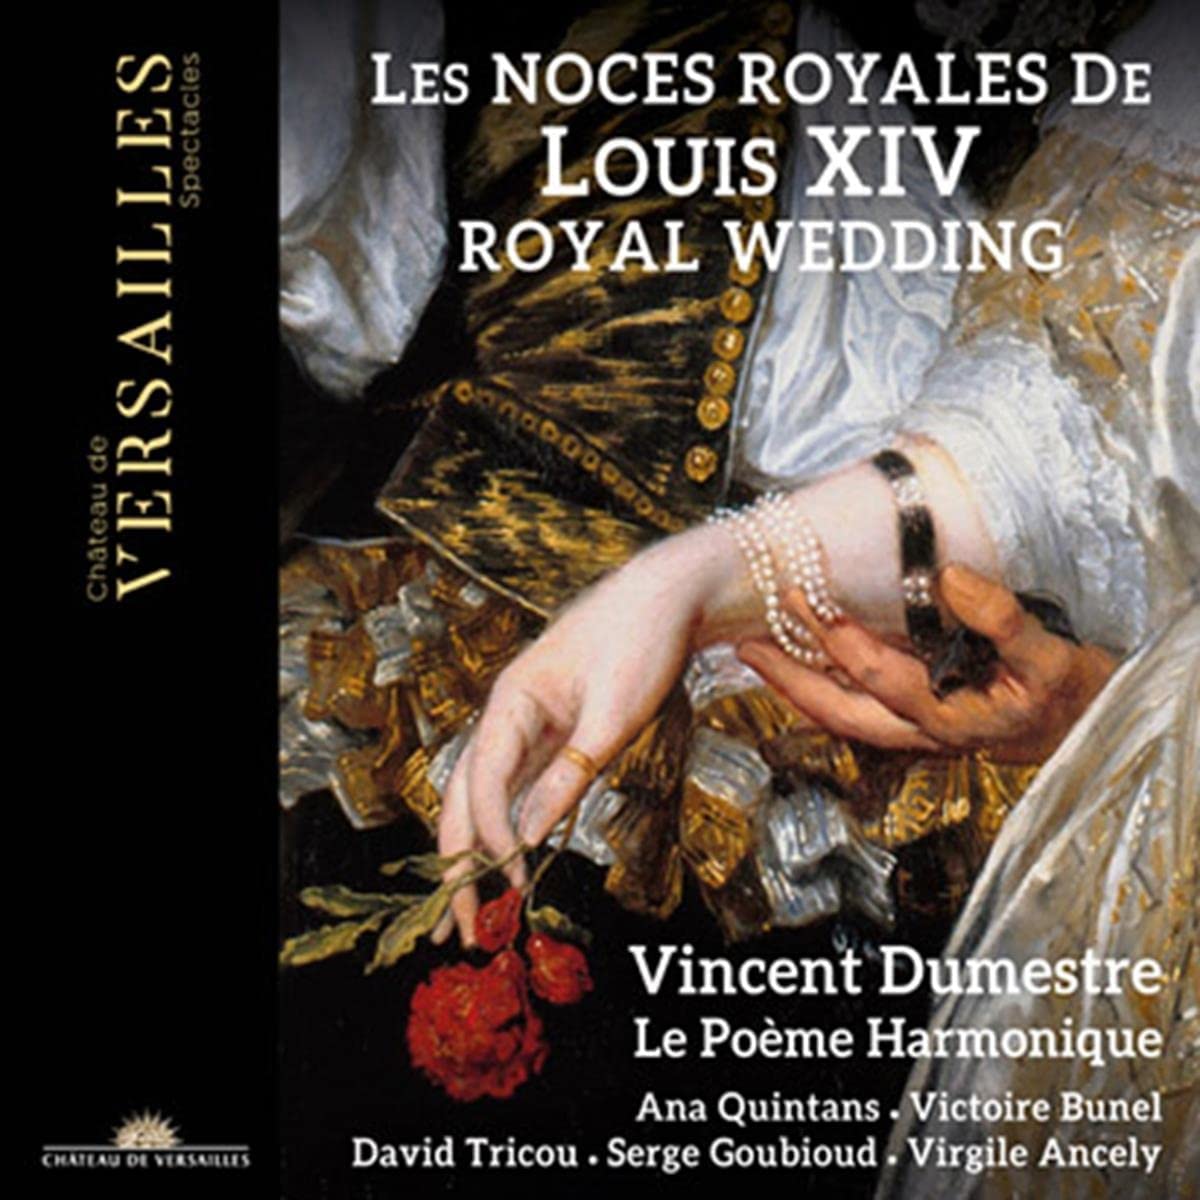 CD cover of Les noces de Louis XIV